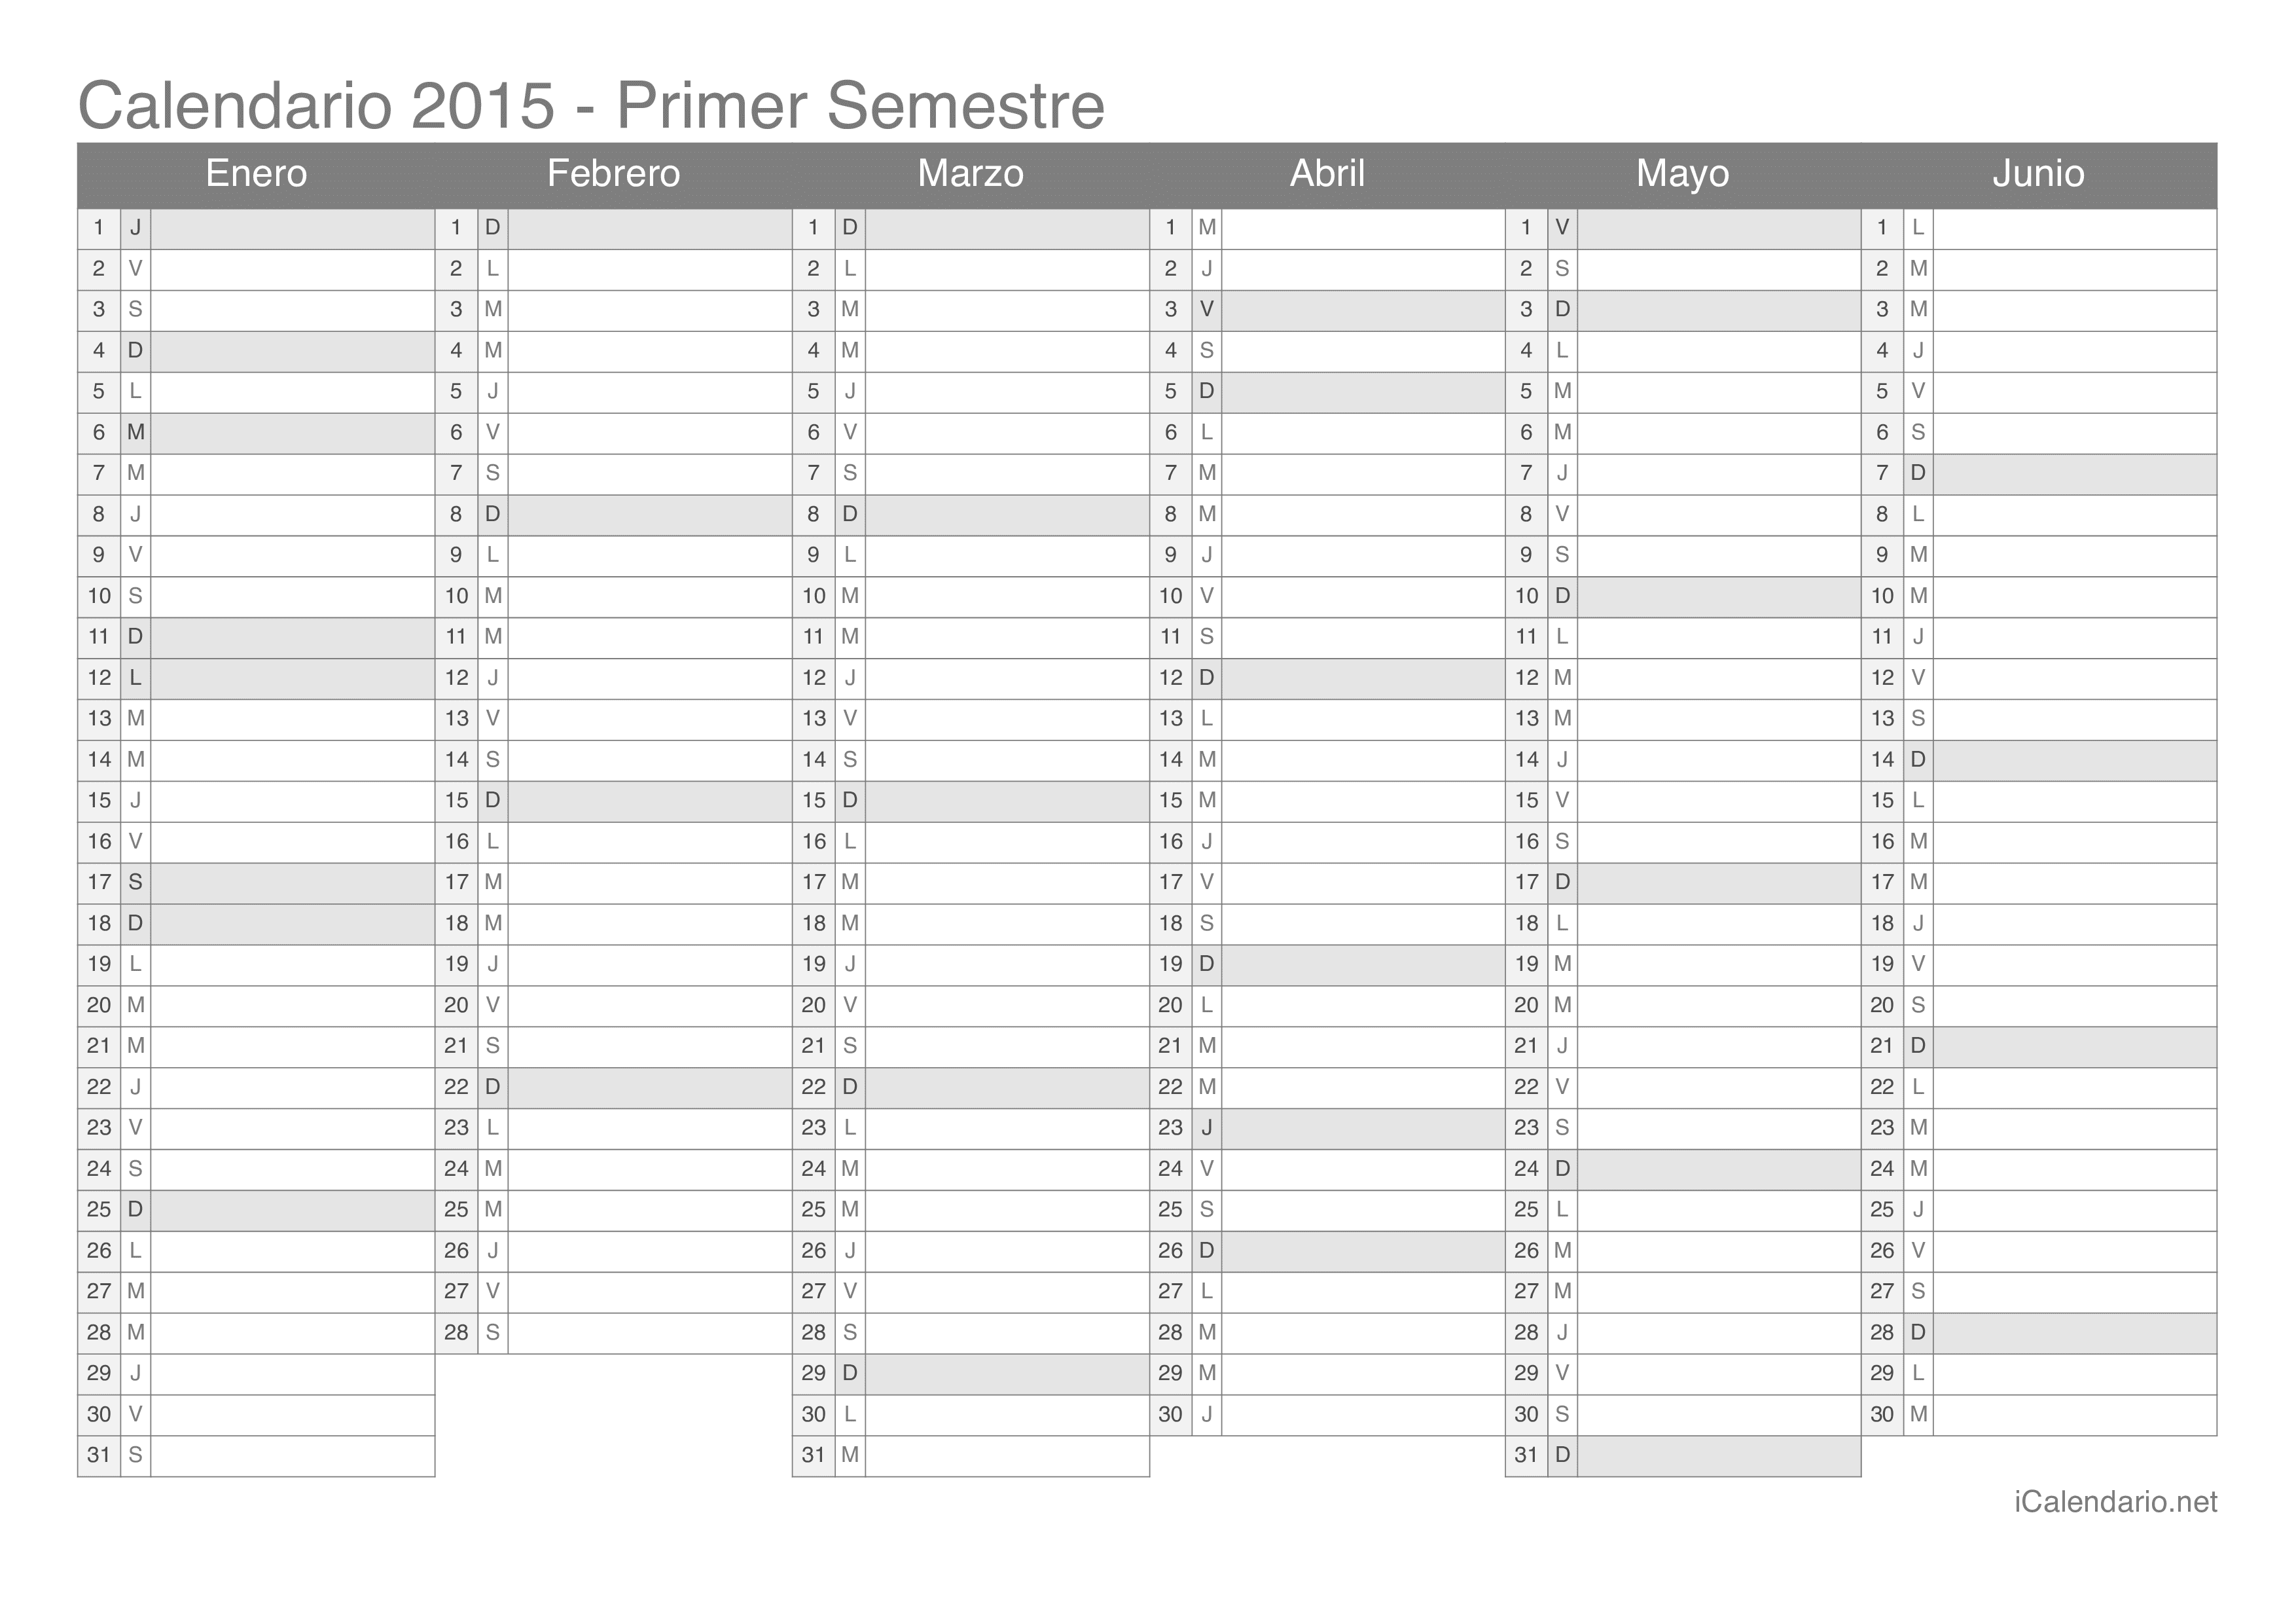 Calendario por semestre 2015